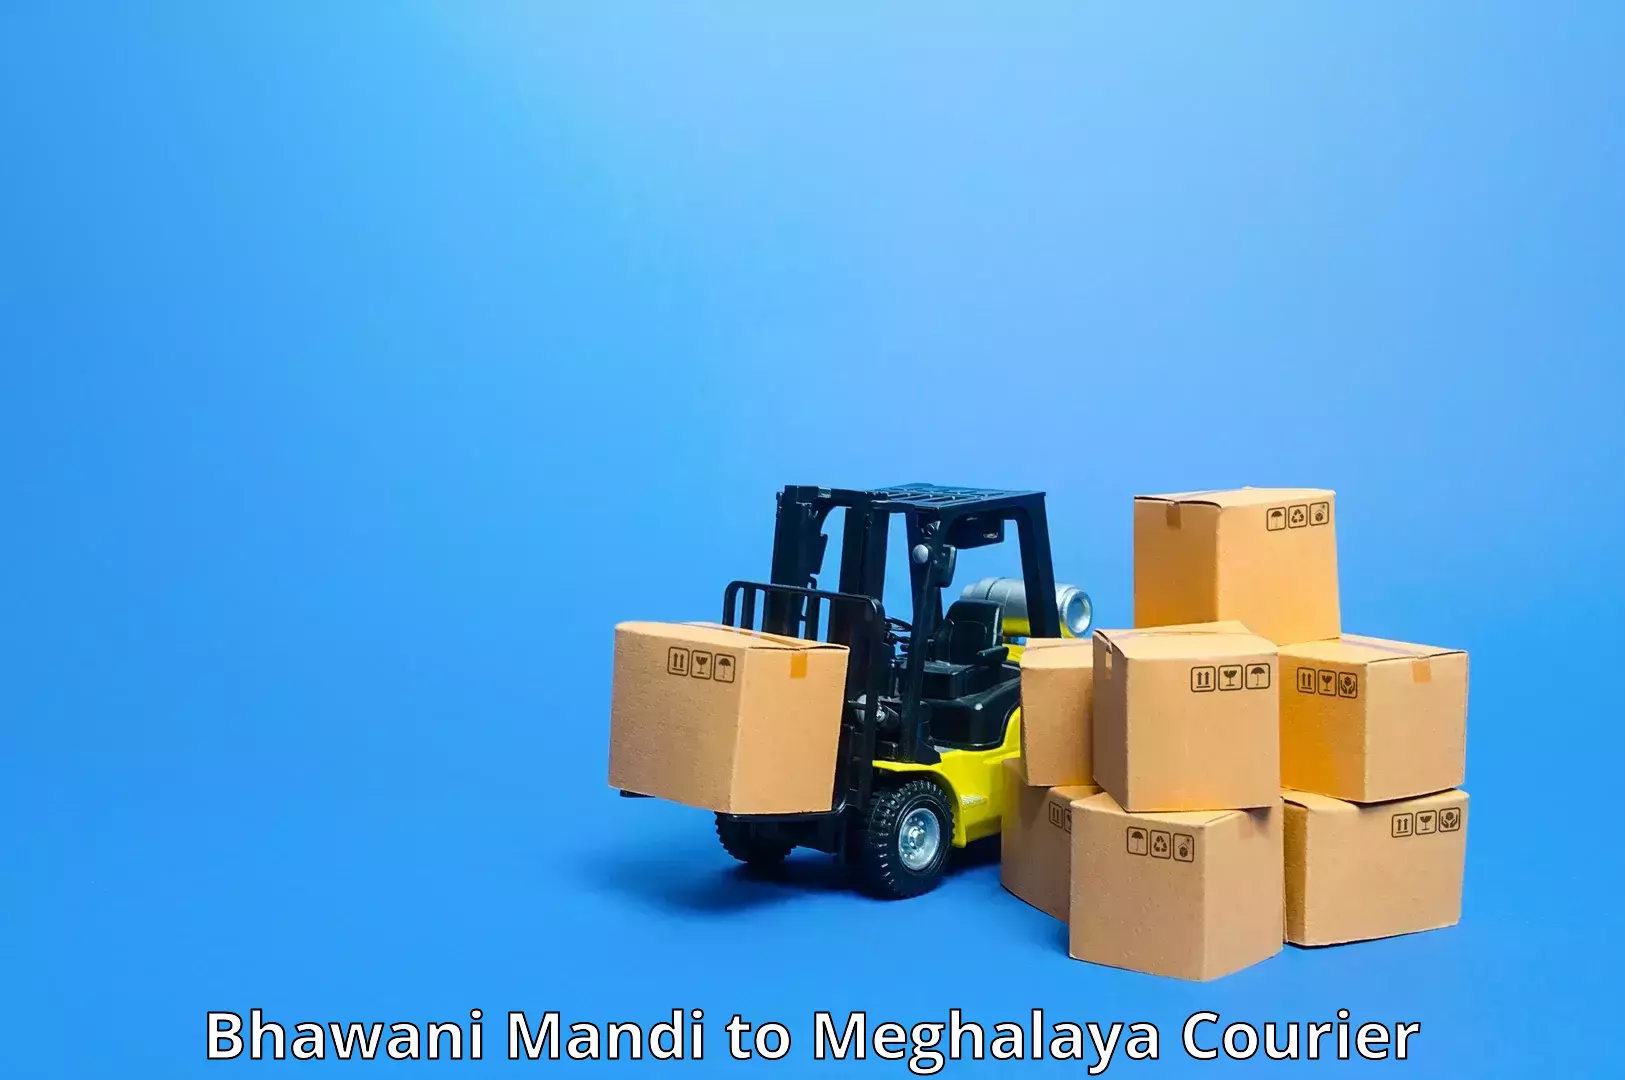 Urgent courier needs Bhawani Mandi to Meghalaya